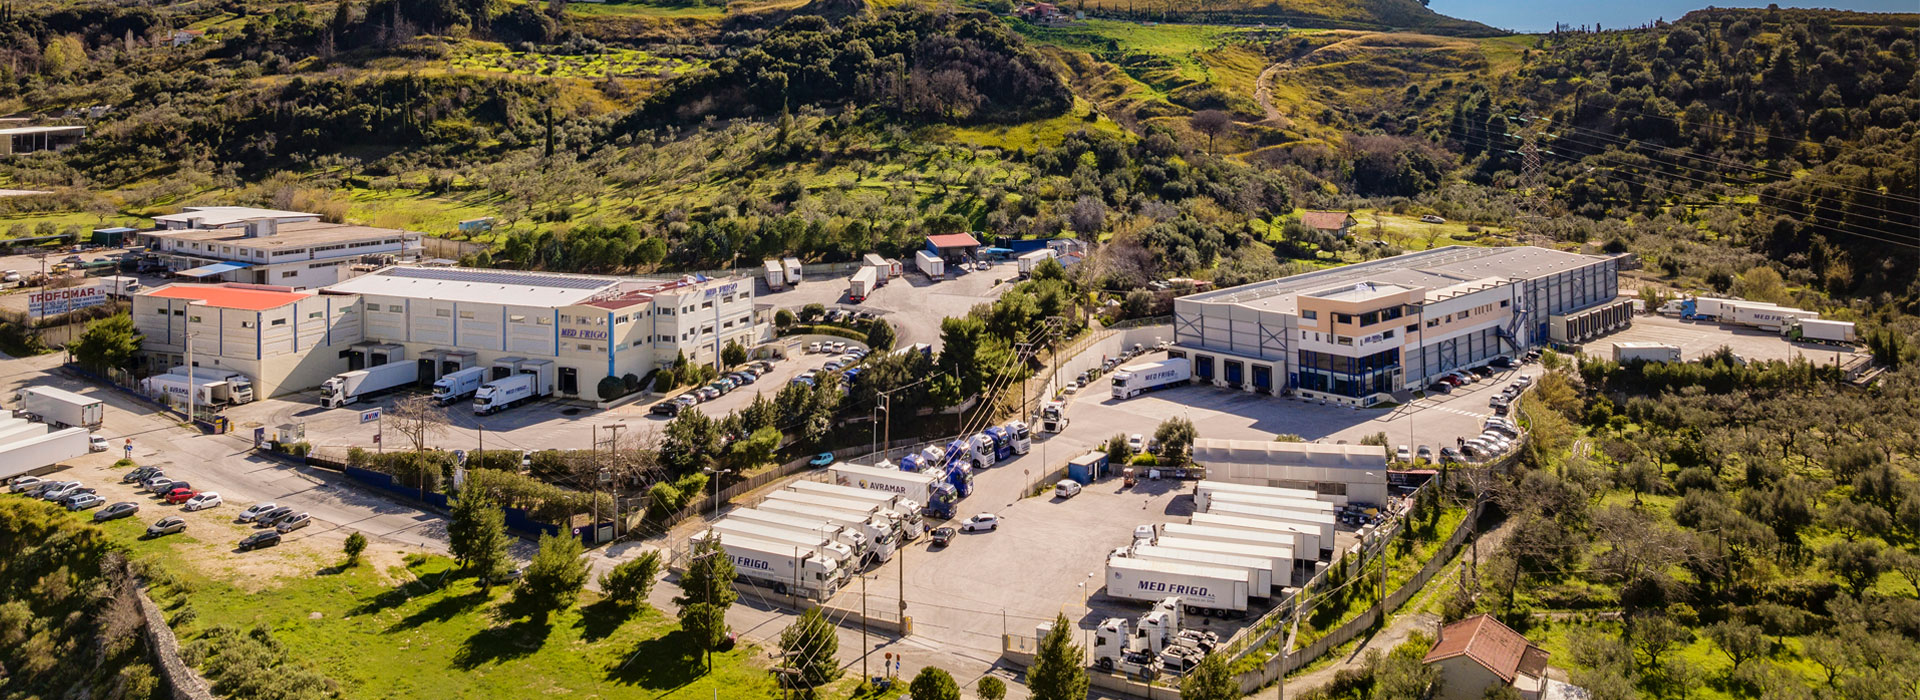 Our facilities in Patras